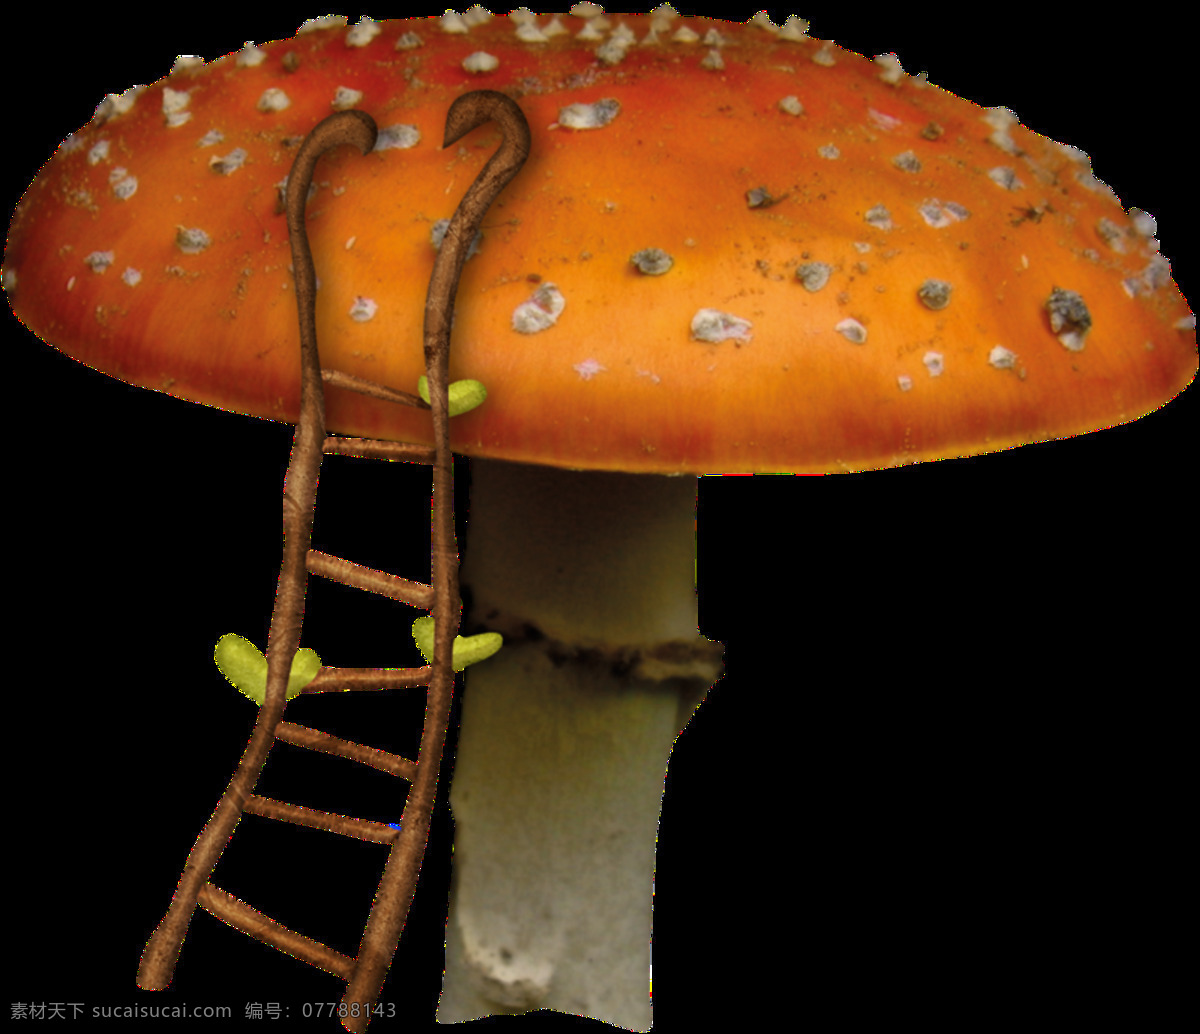 彩绘 蘑菇 塔 图案 彩绘装饰画 蘑菇塔 童话楼梯 童话蘑菇 童话世界 童话素材